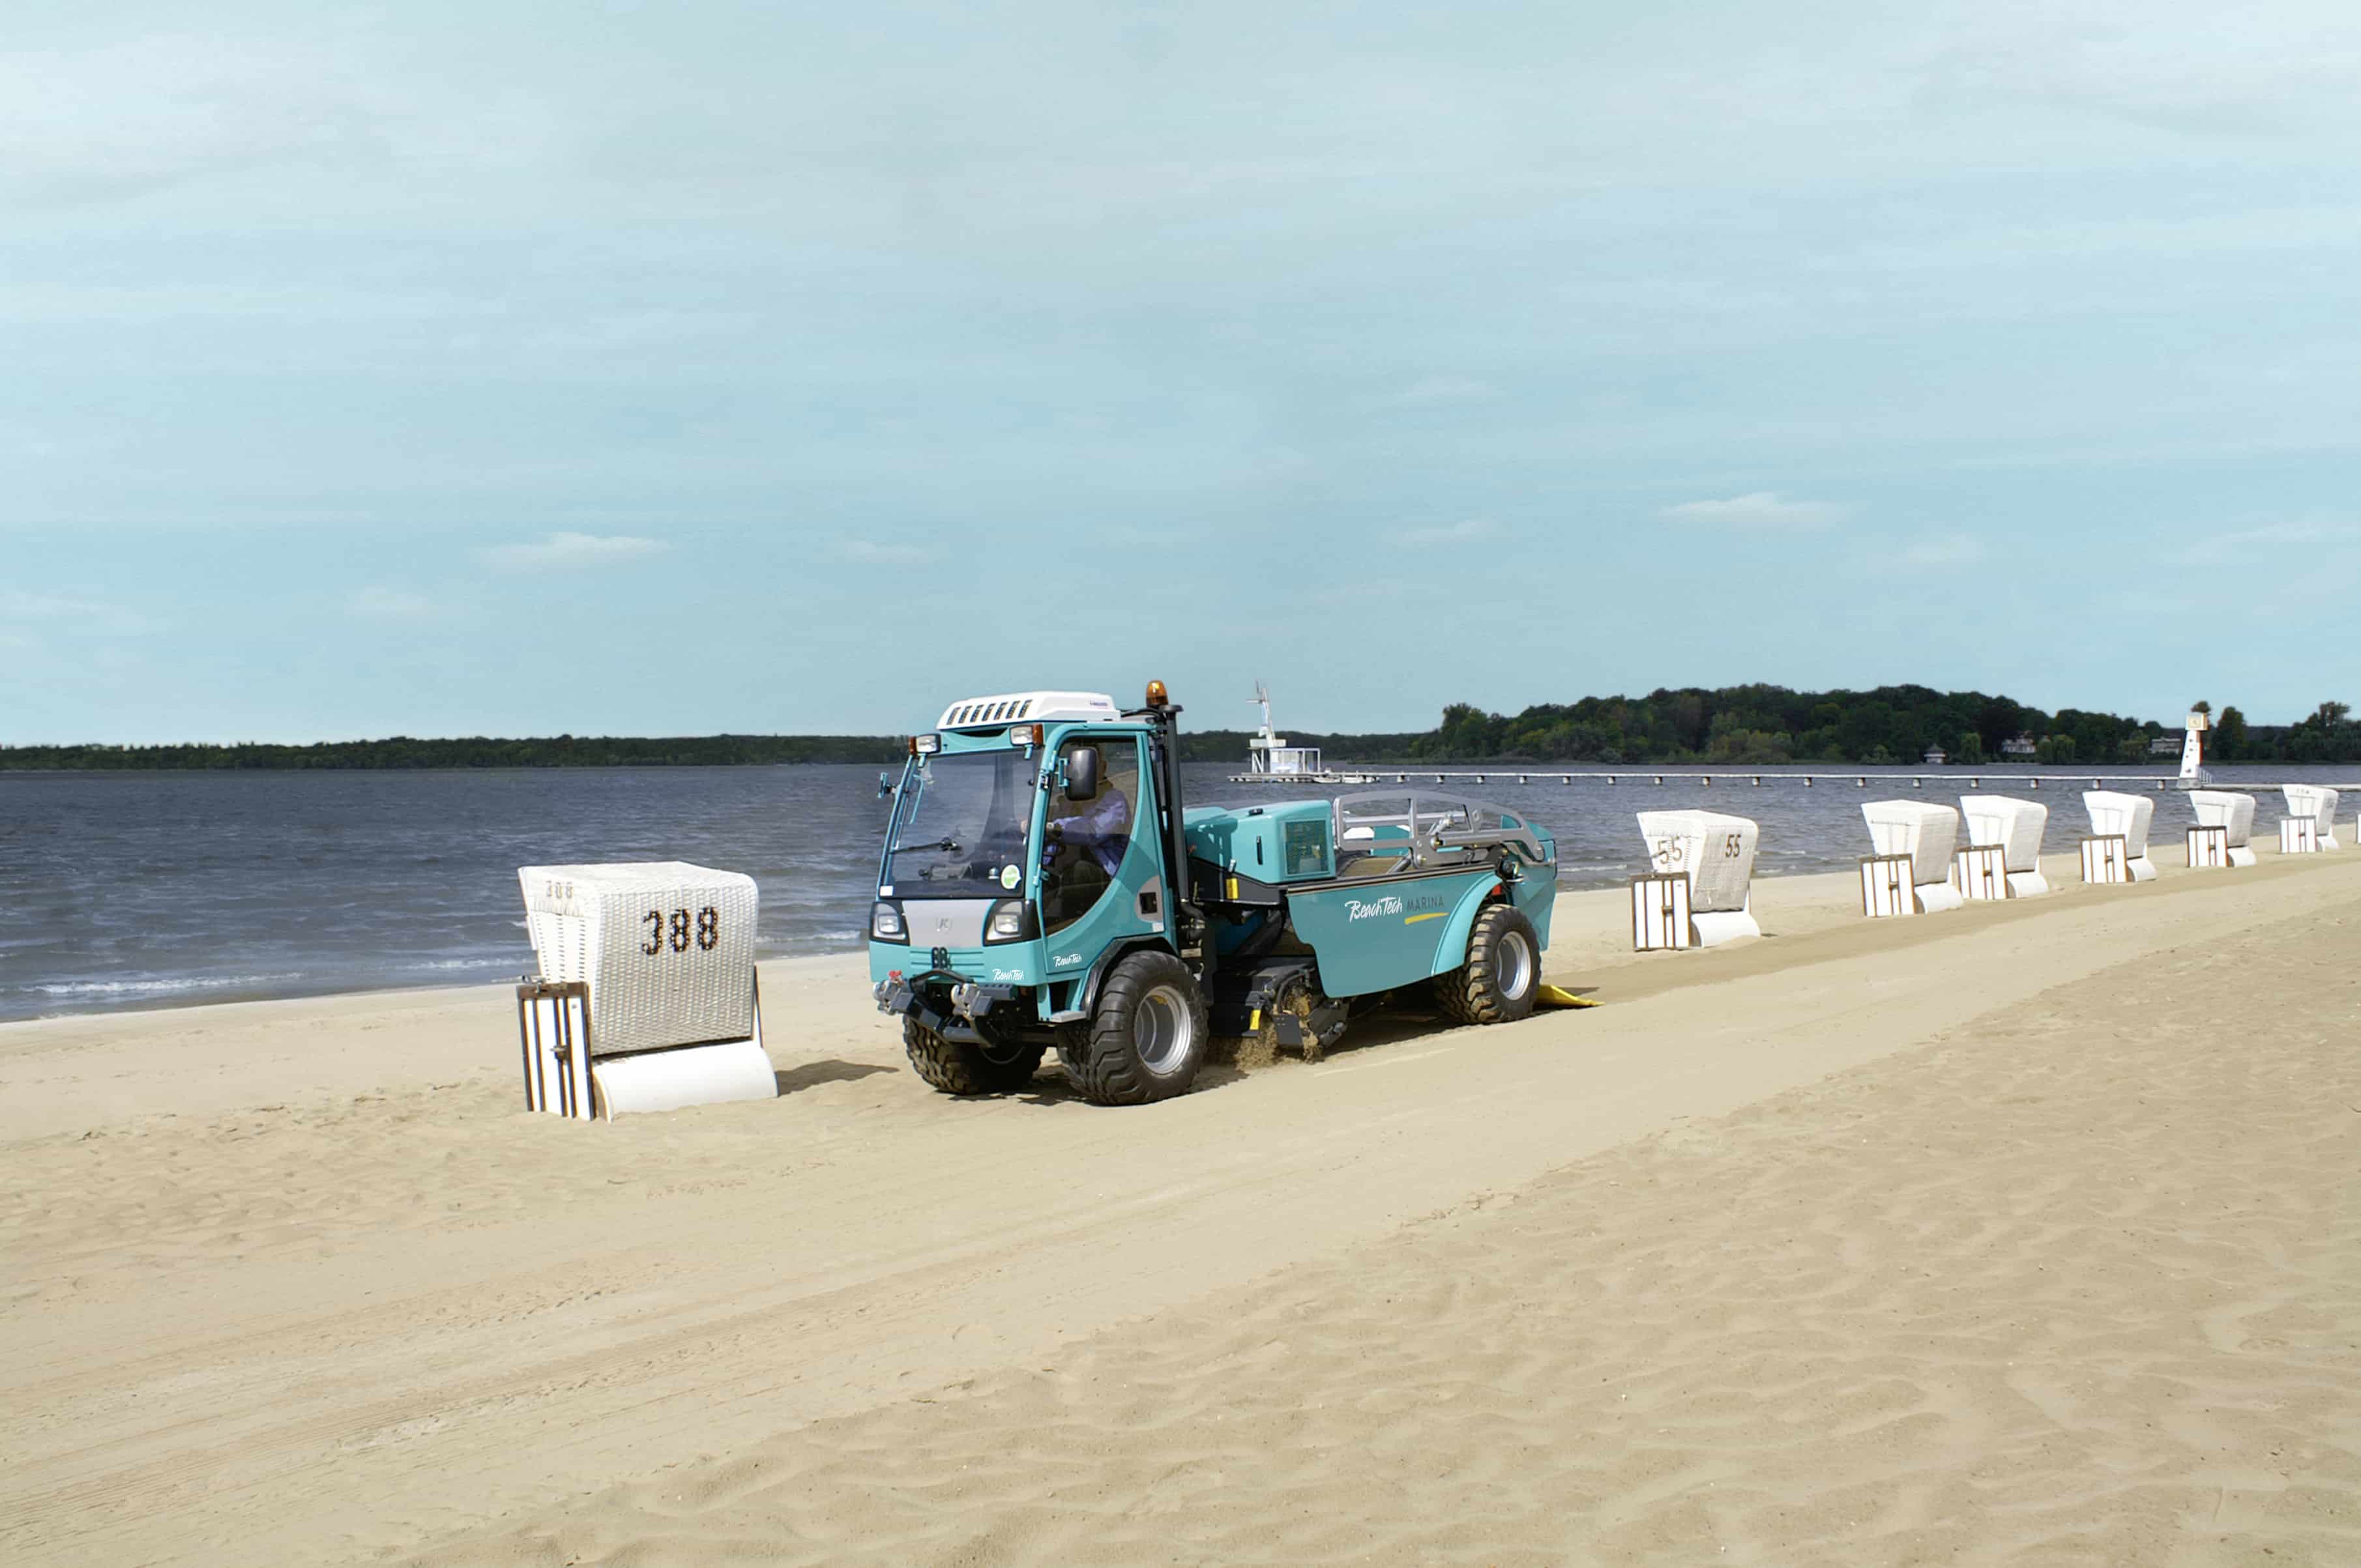 Nettoyeur de plage autopropulsé BeachTech Marina sur la plage avec chaises de plage 